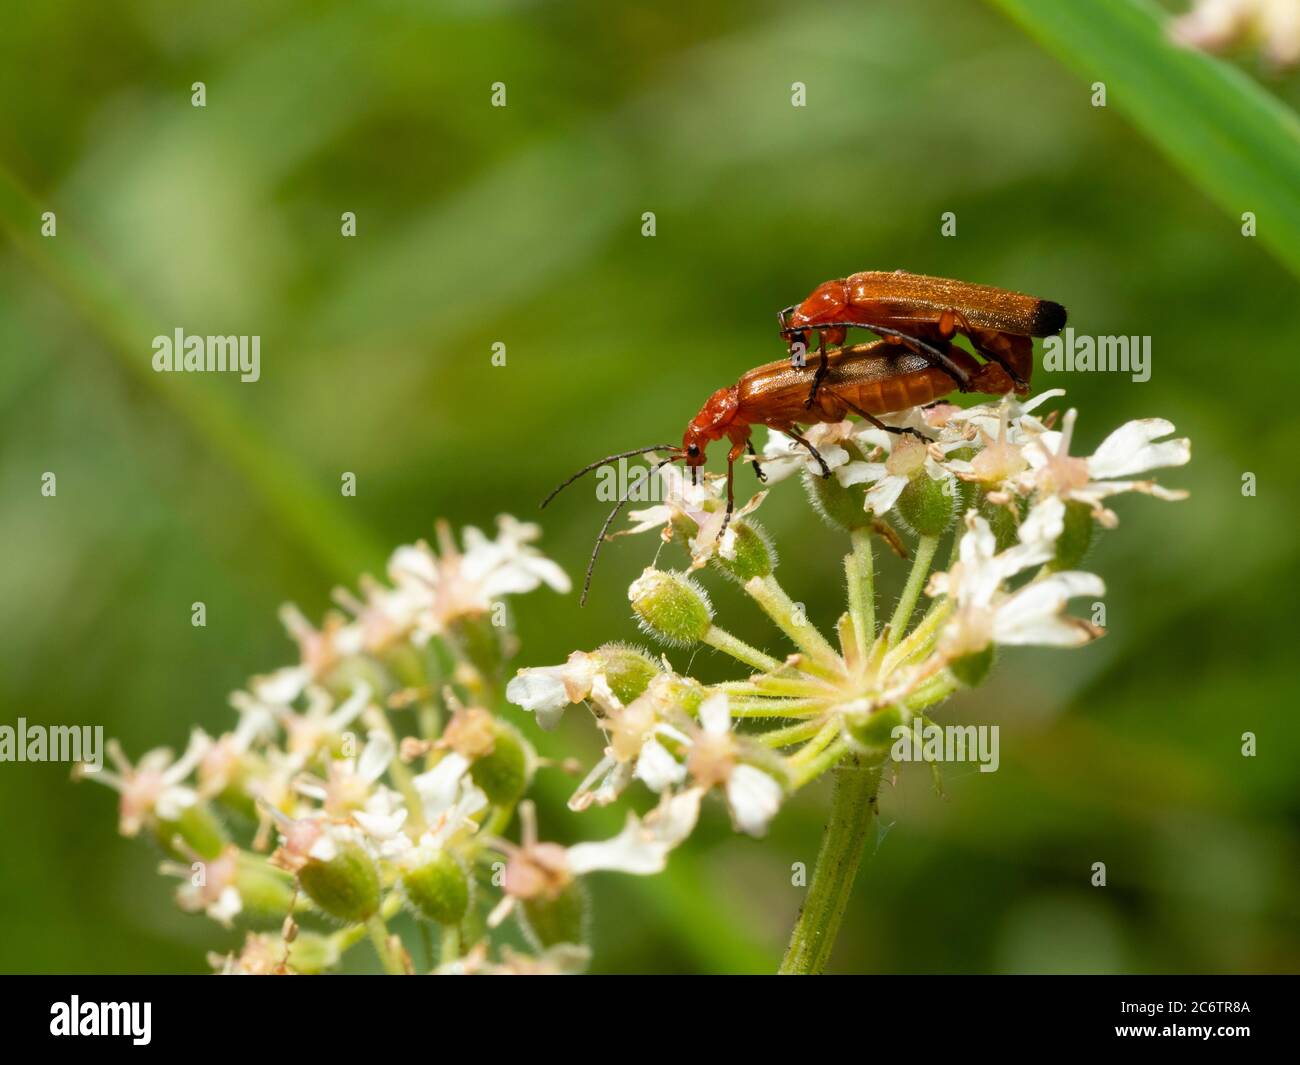 Des coléoptères de soldat rouge adultes, Rhagonycha fulva, se sont accouplés à la tête de fleur de l'herbe à poux, Heracleum spondylium, dans un pré britannique Banque D'Images